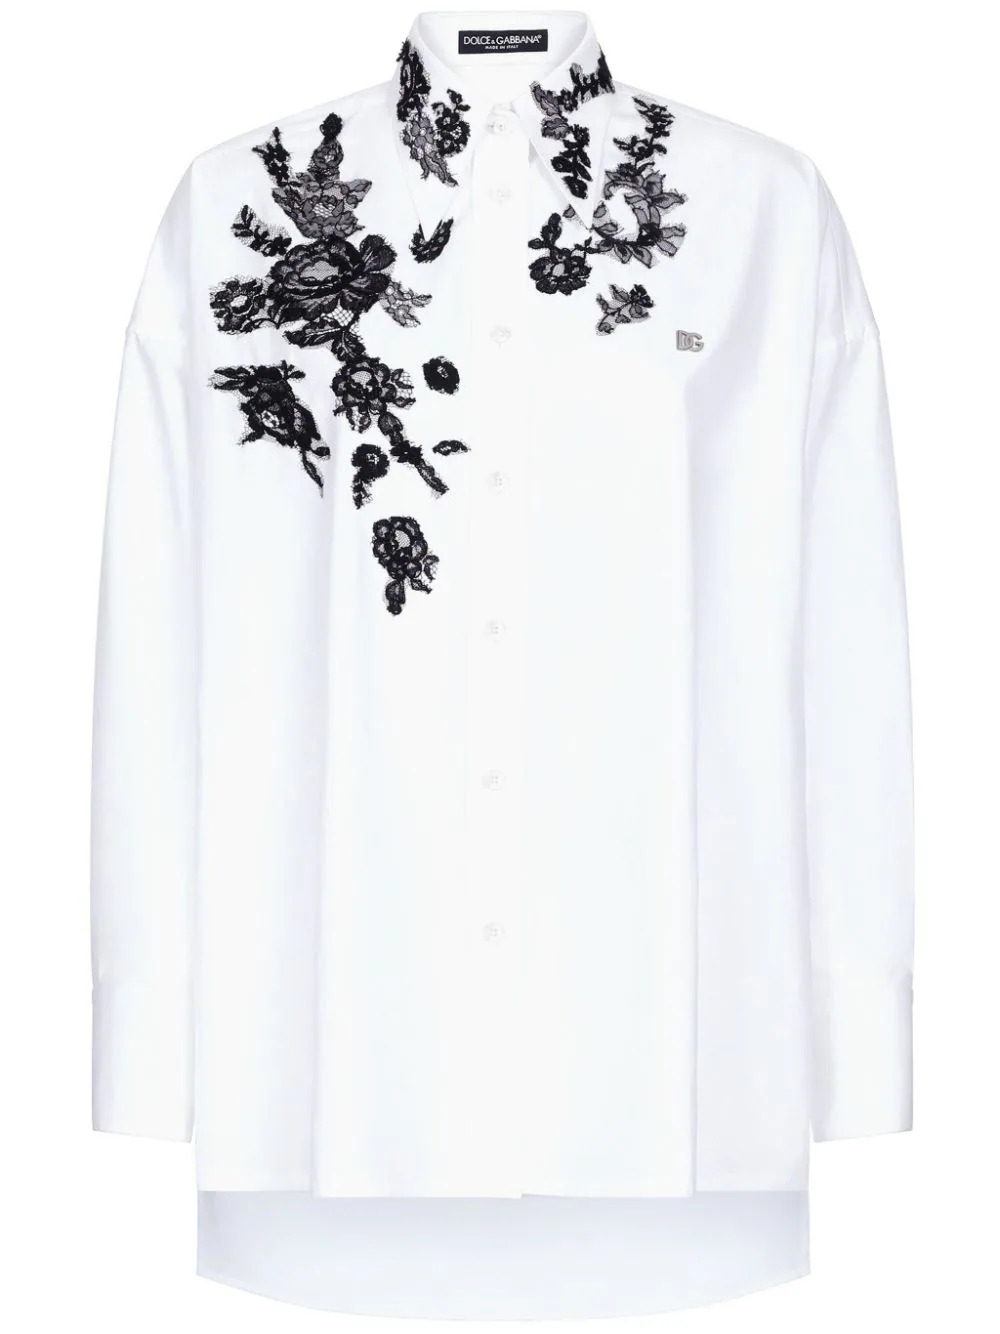 Oversize shirt with lace appliqués